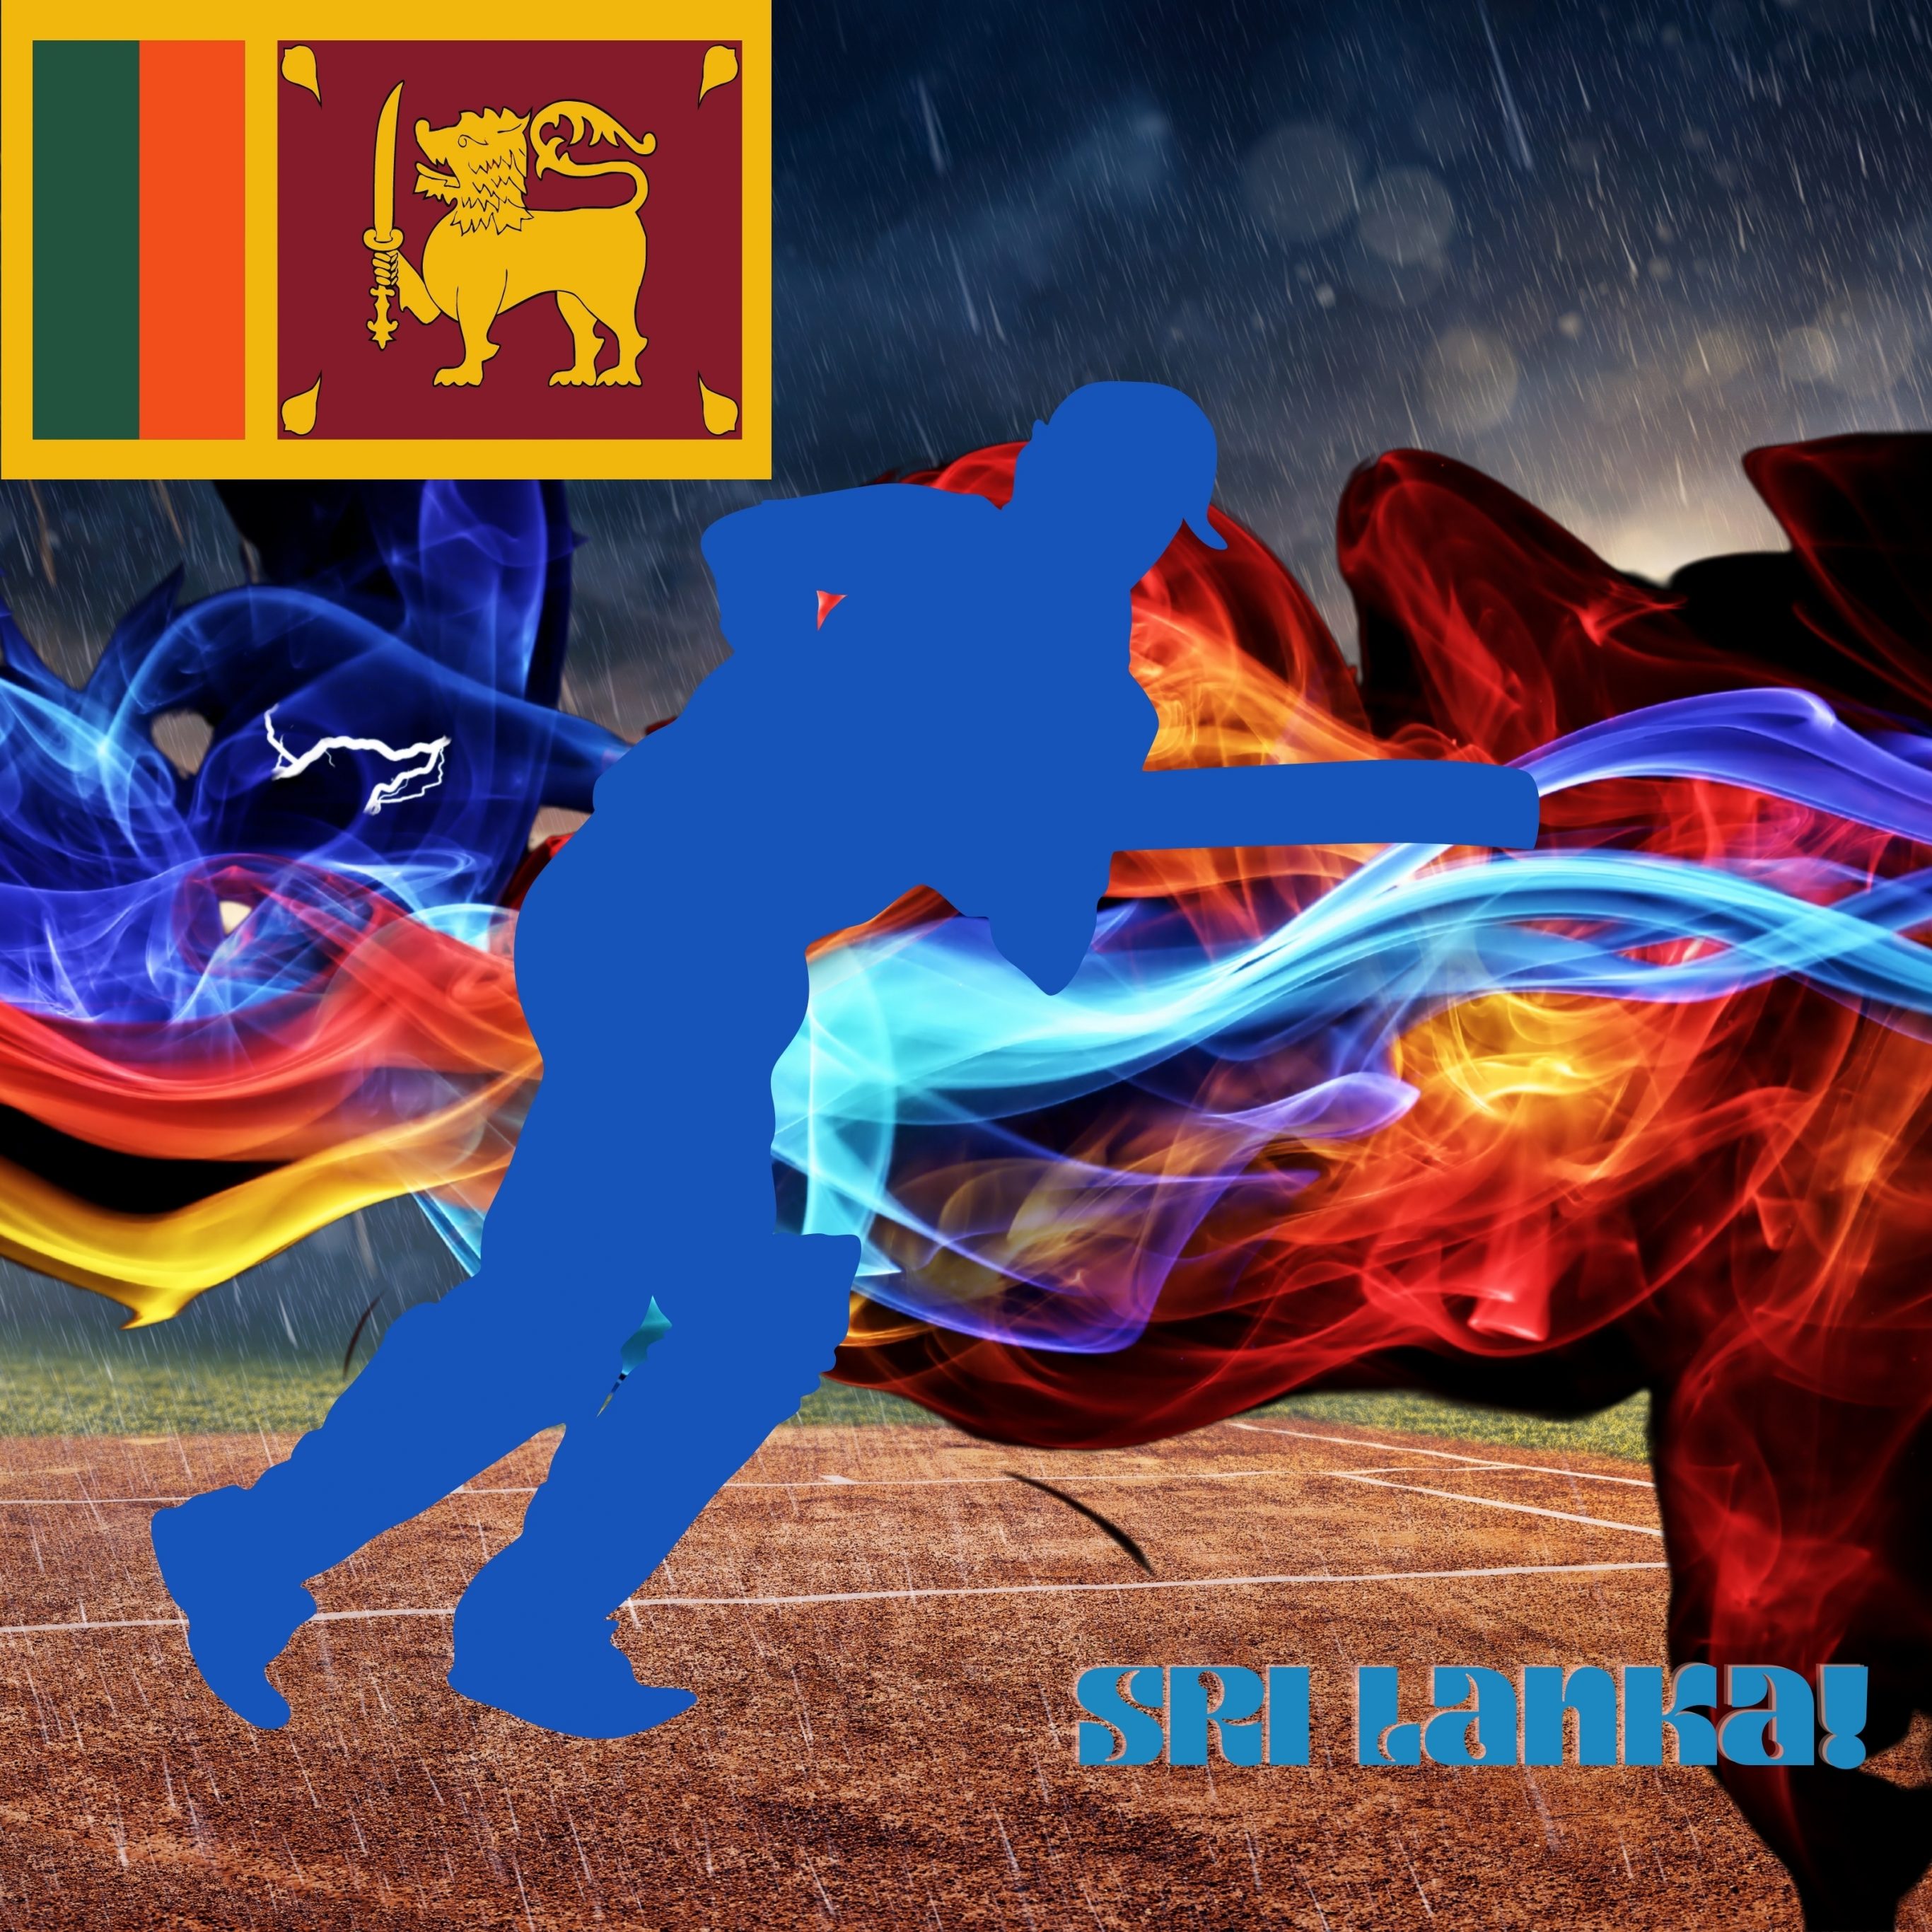 iPad Pro 12.9 wallpapers Sri Lanka Cricket Stadium iPad Wallpaper